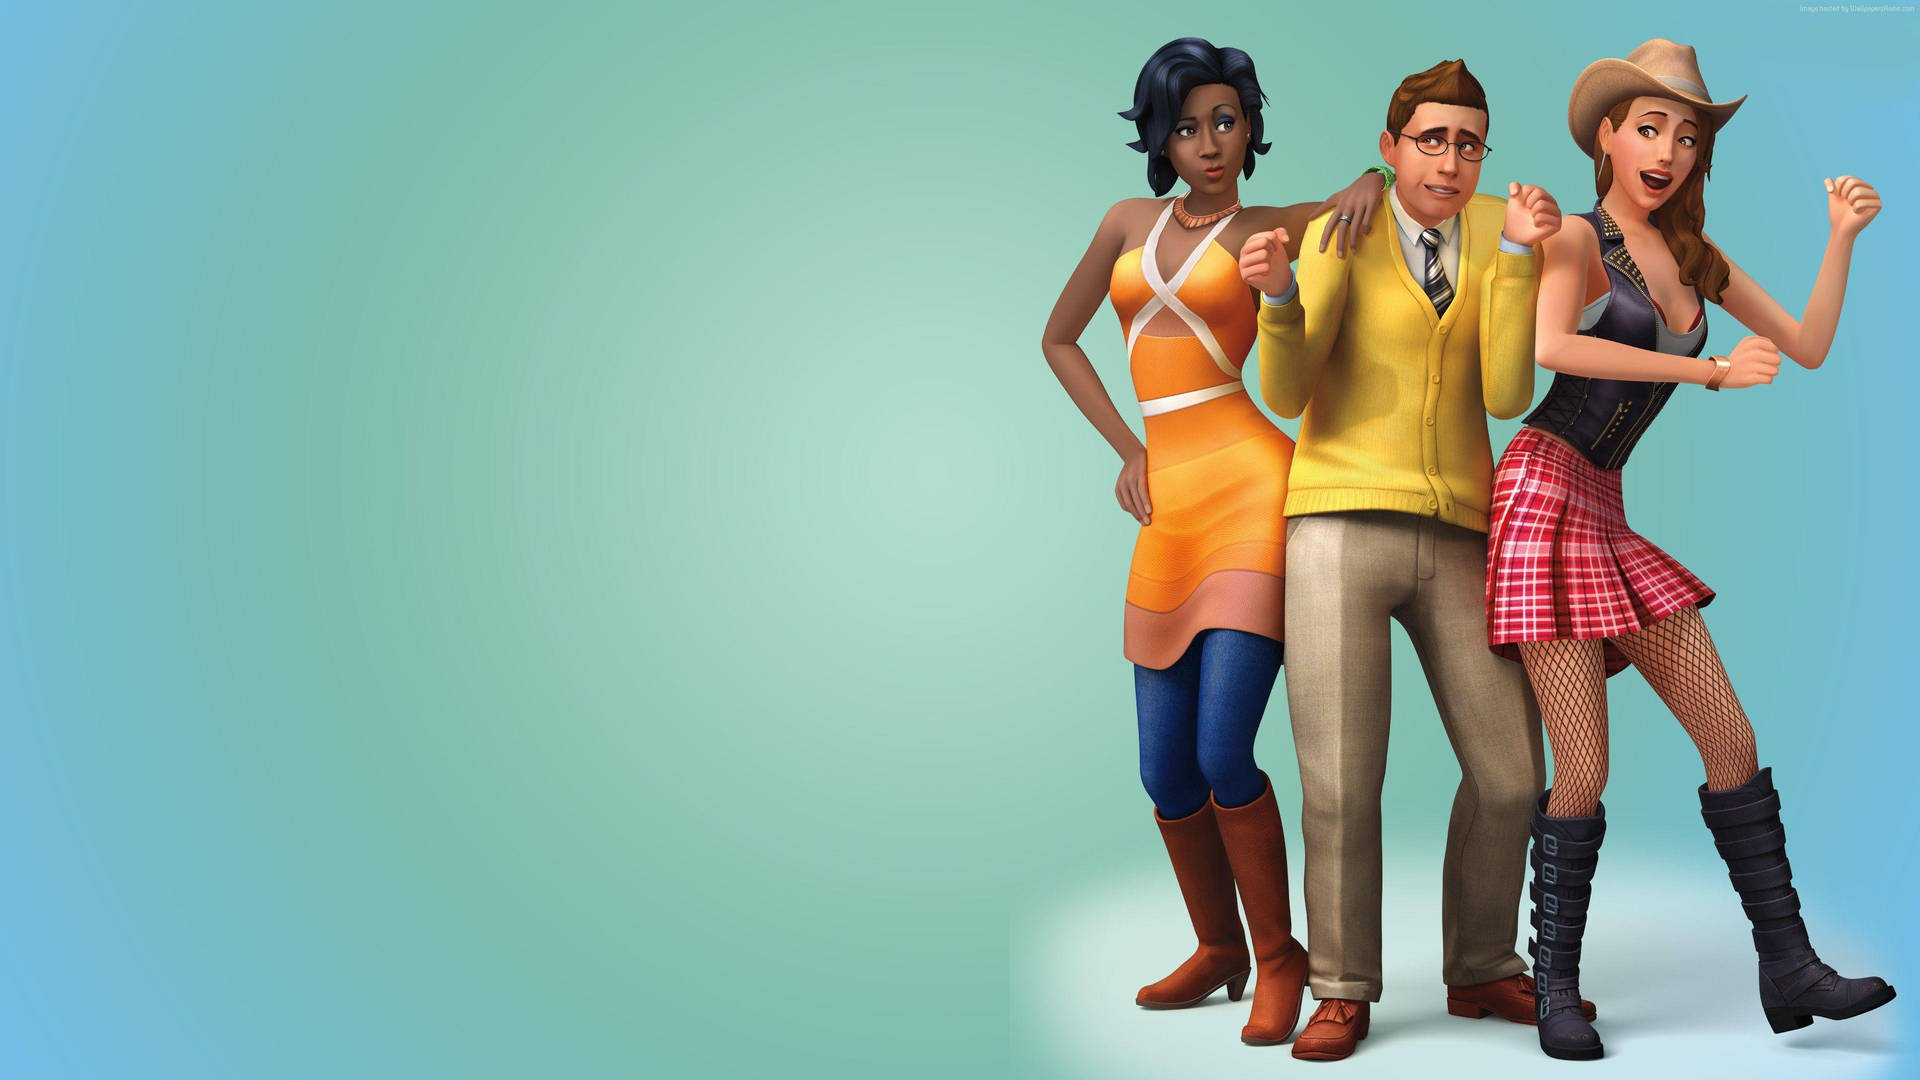 Dancing The Sims Wallpaper